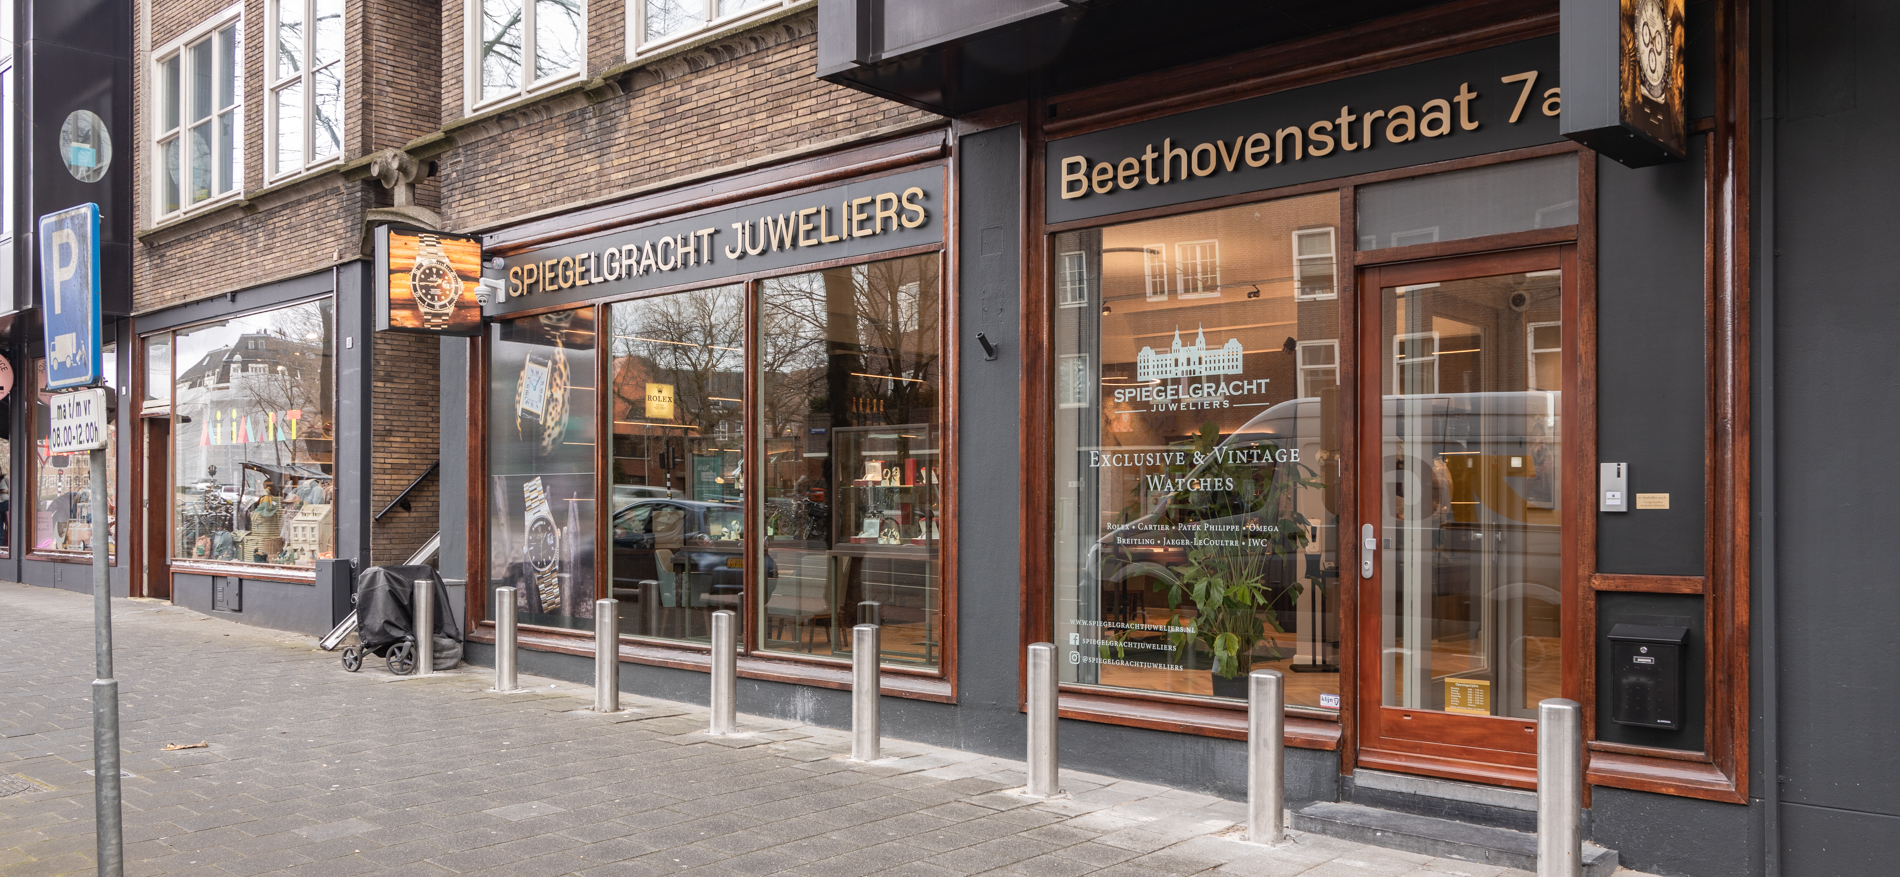 Spiegelgracht Juweliere | Amsterdam (NL) - 